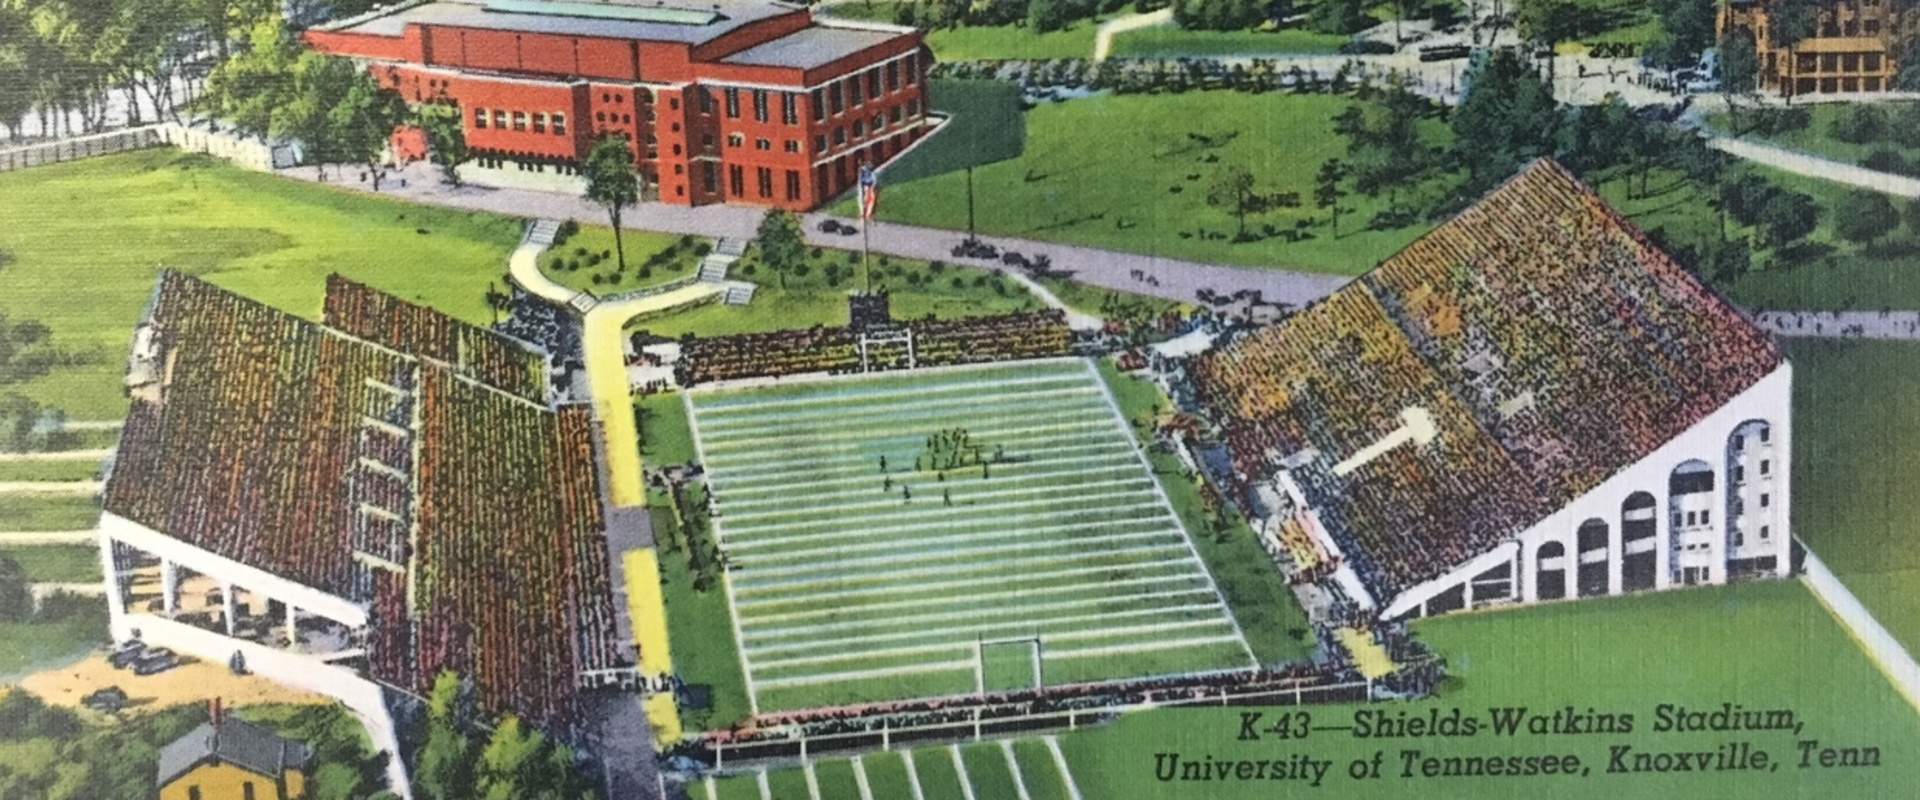 Neyland Stadium - Facilities - University of Tennessee Athletics